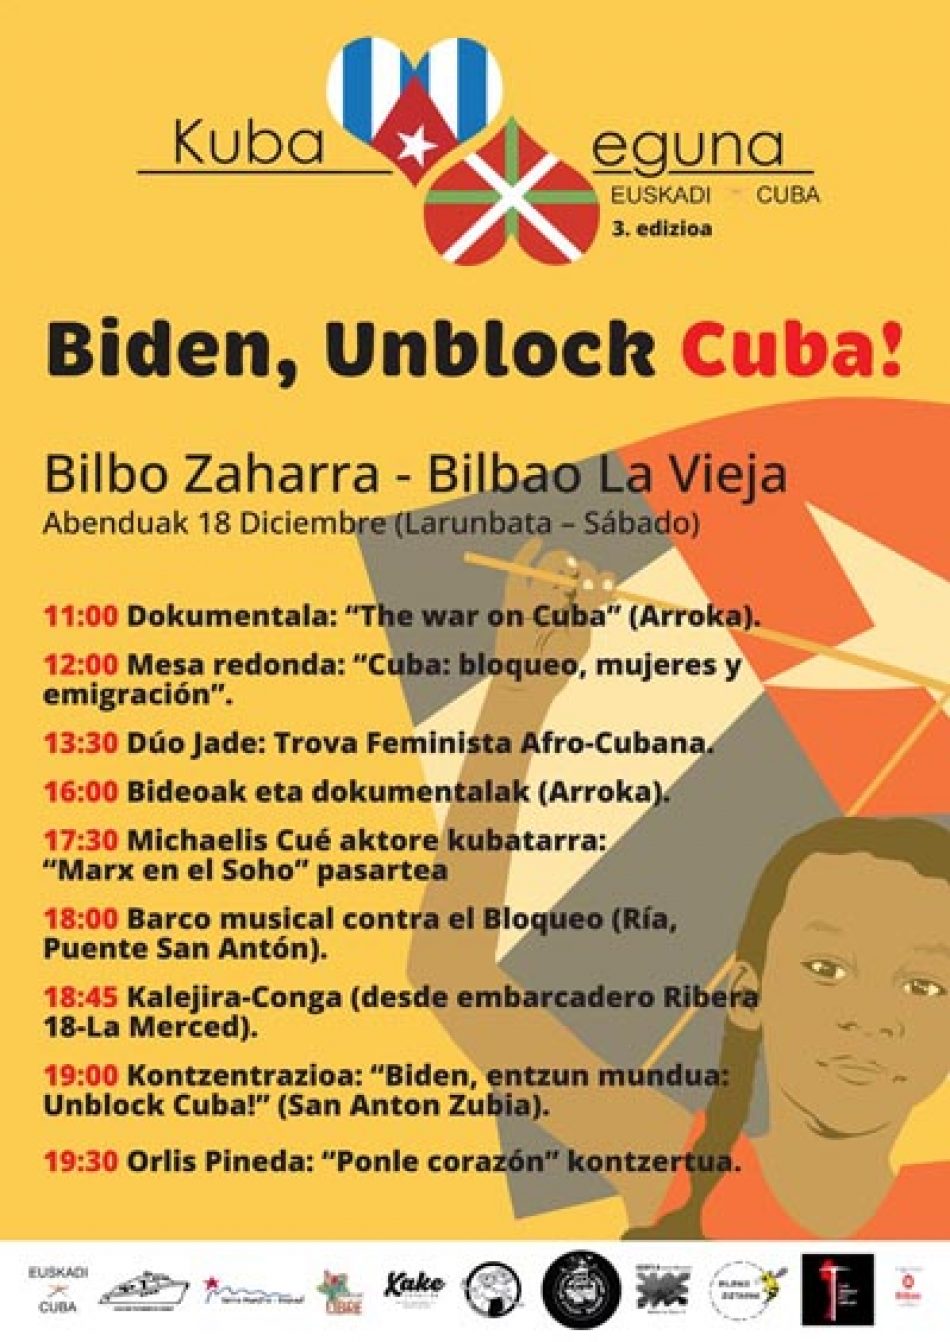 3ª edición del Kuba Eguna dirá el 18 de diciembre en Bilbao La Vieja, alto y claro: “Biden entzun mundua: Unblock Cuba!”